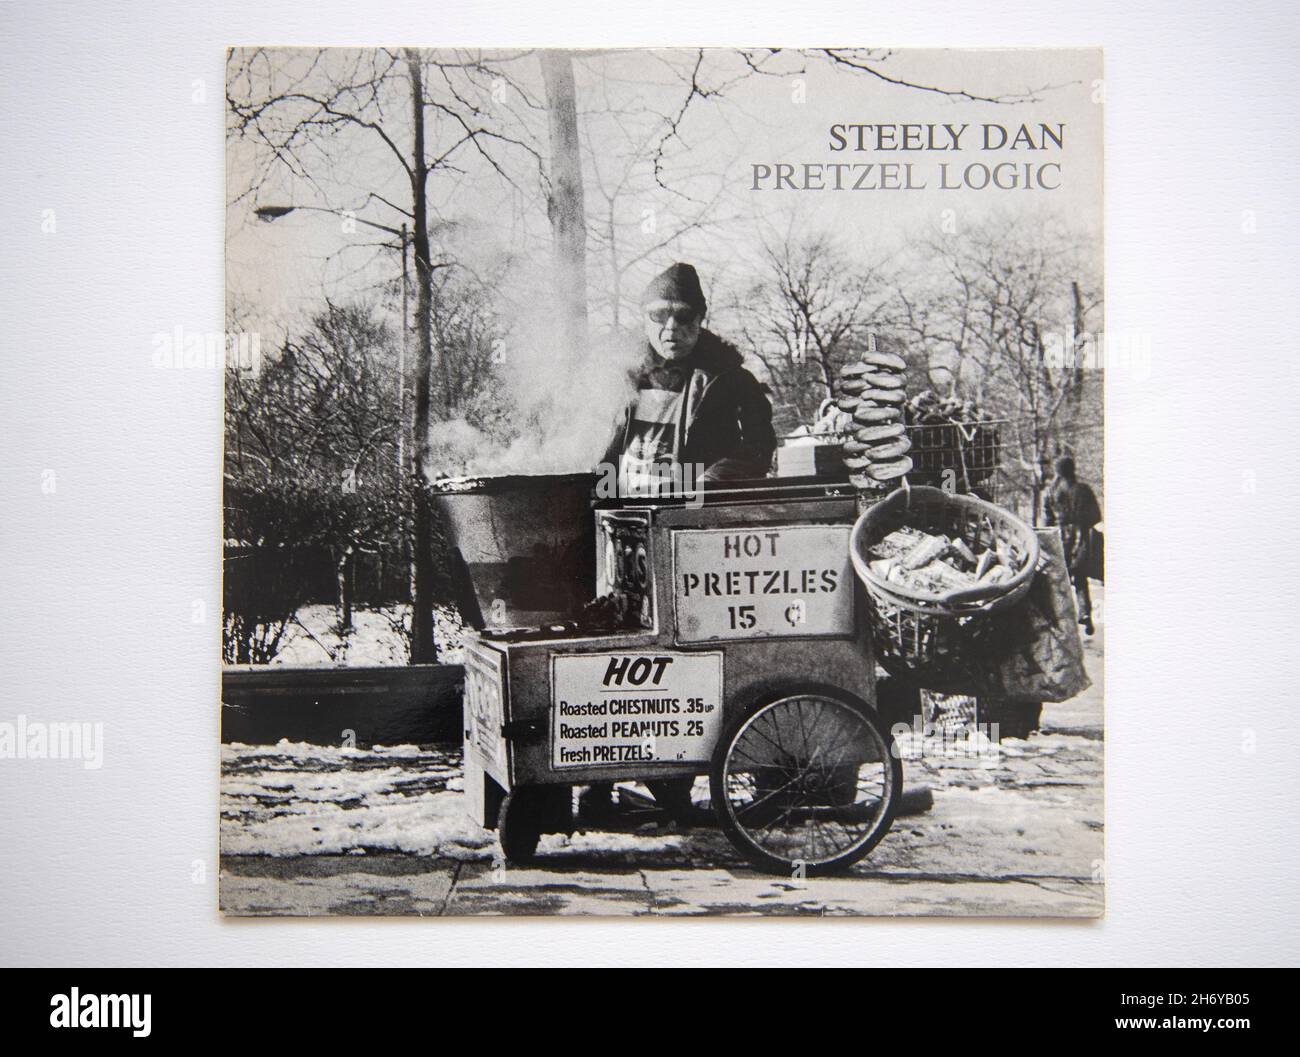 LP couverture de l'album Pretzel Logic, sorti par le groupe américain Steely Dan en 1974 Banque D'Images